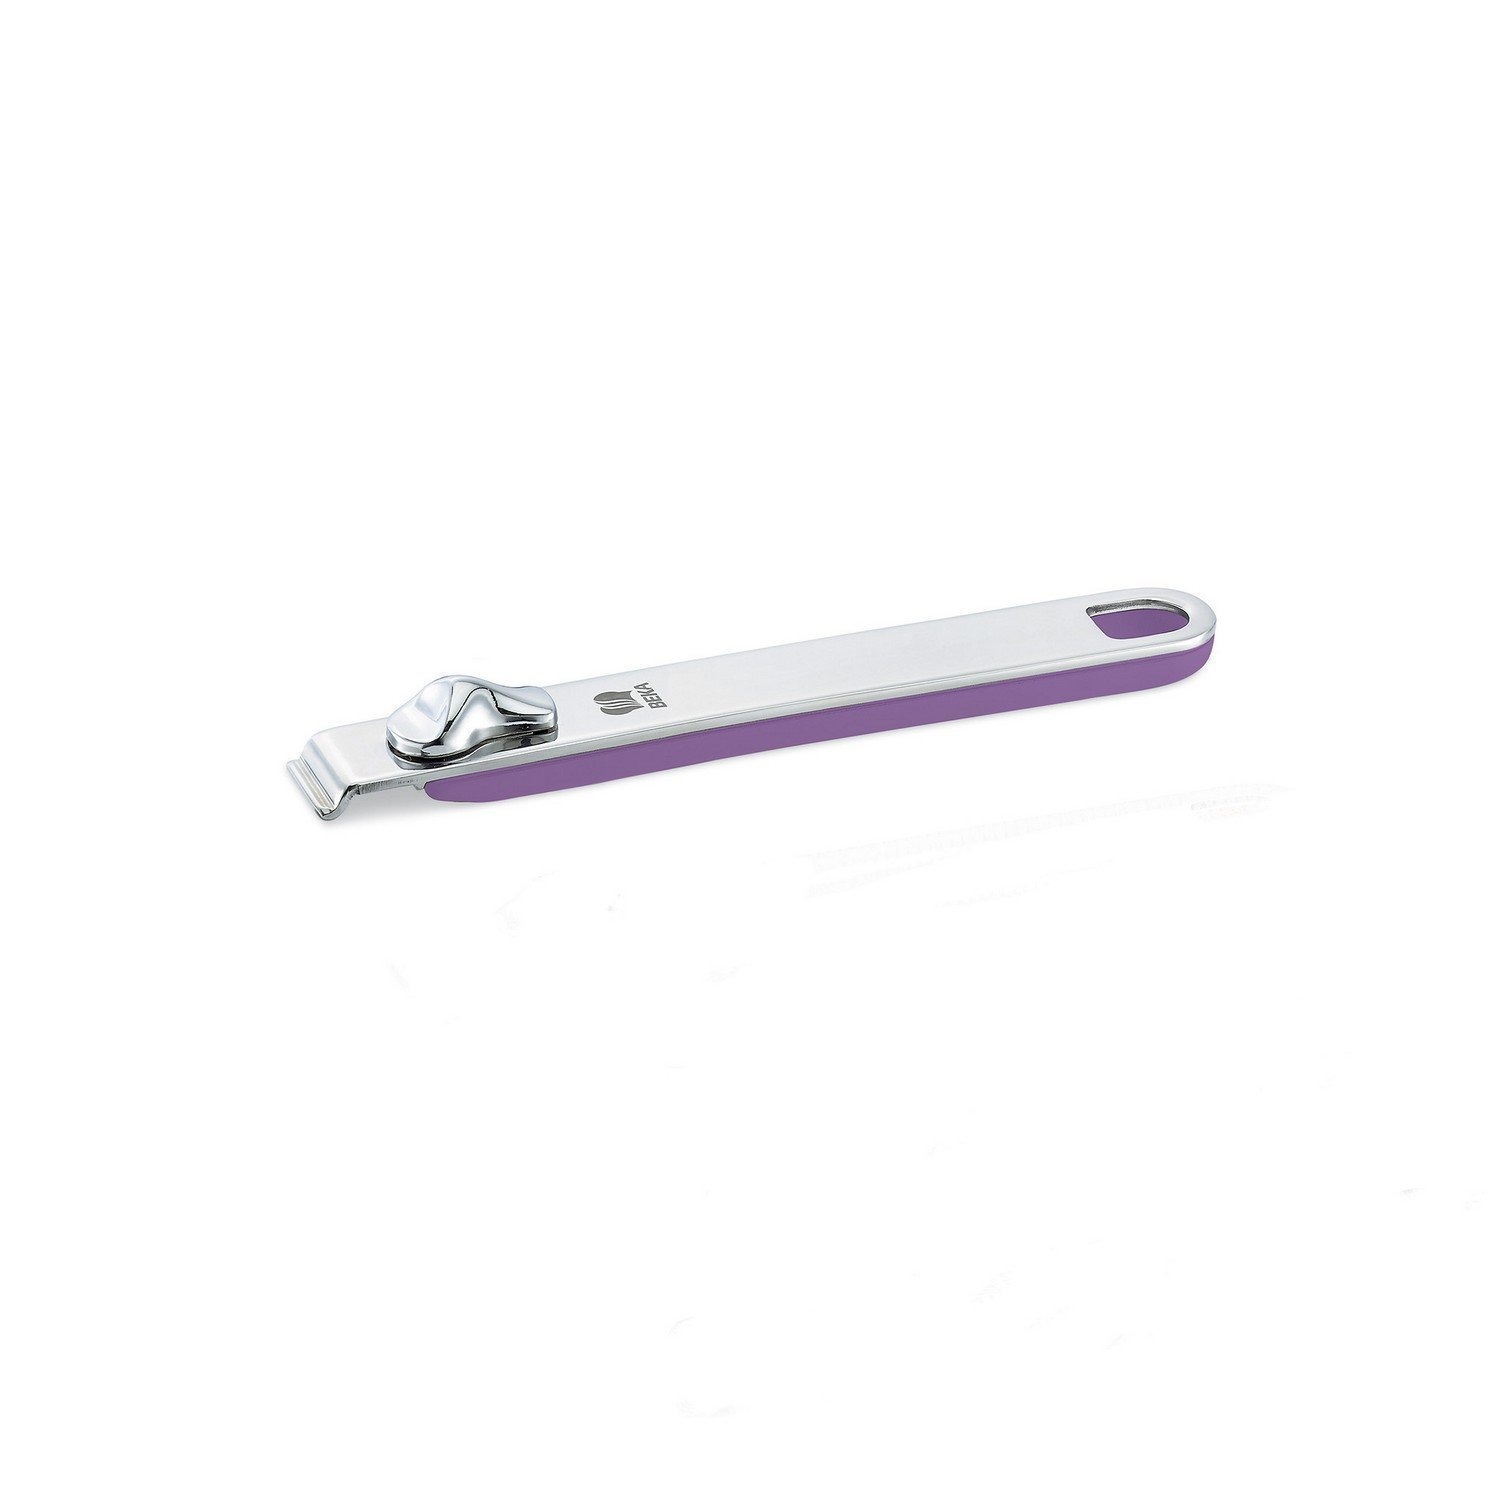 Ручка съемная длинная Beka select фиолетовая 18,5 см ручка съемная длинная beka evolution стальная 19 см